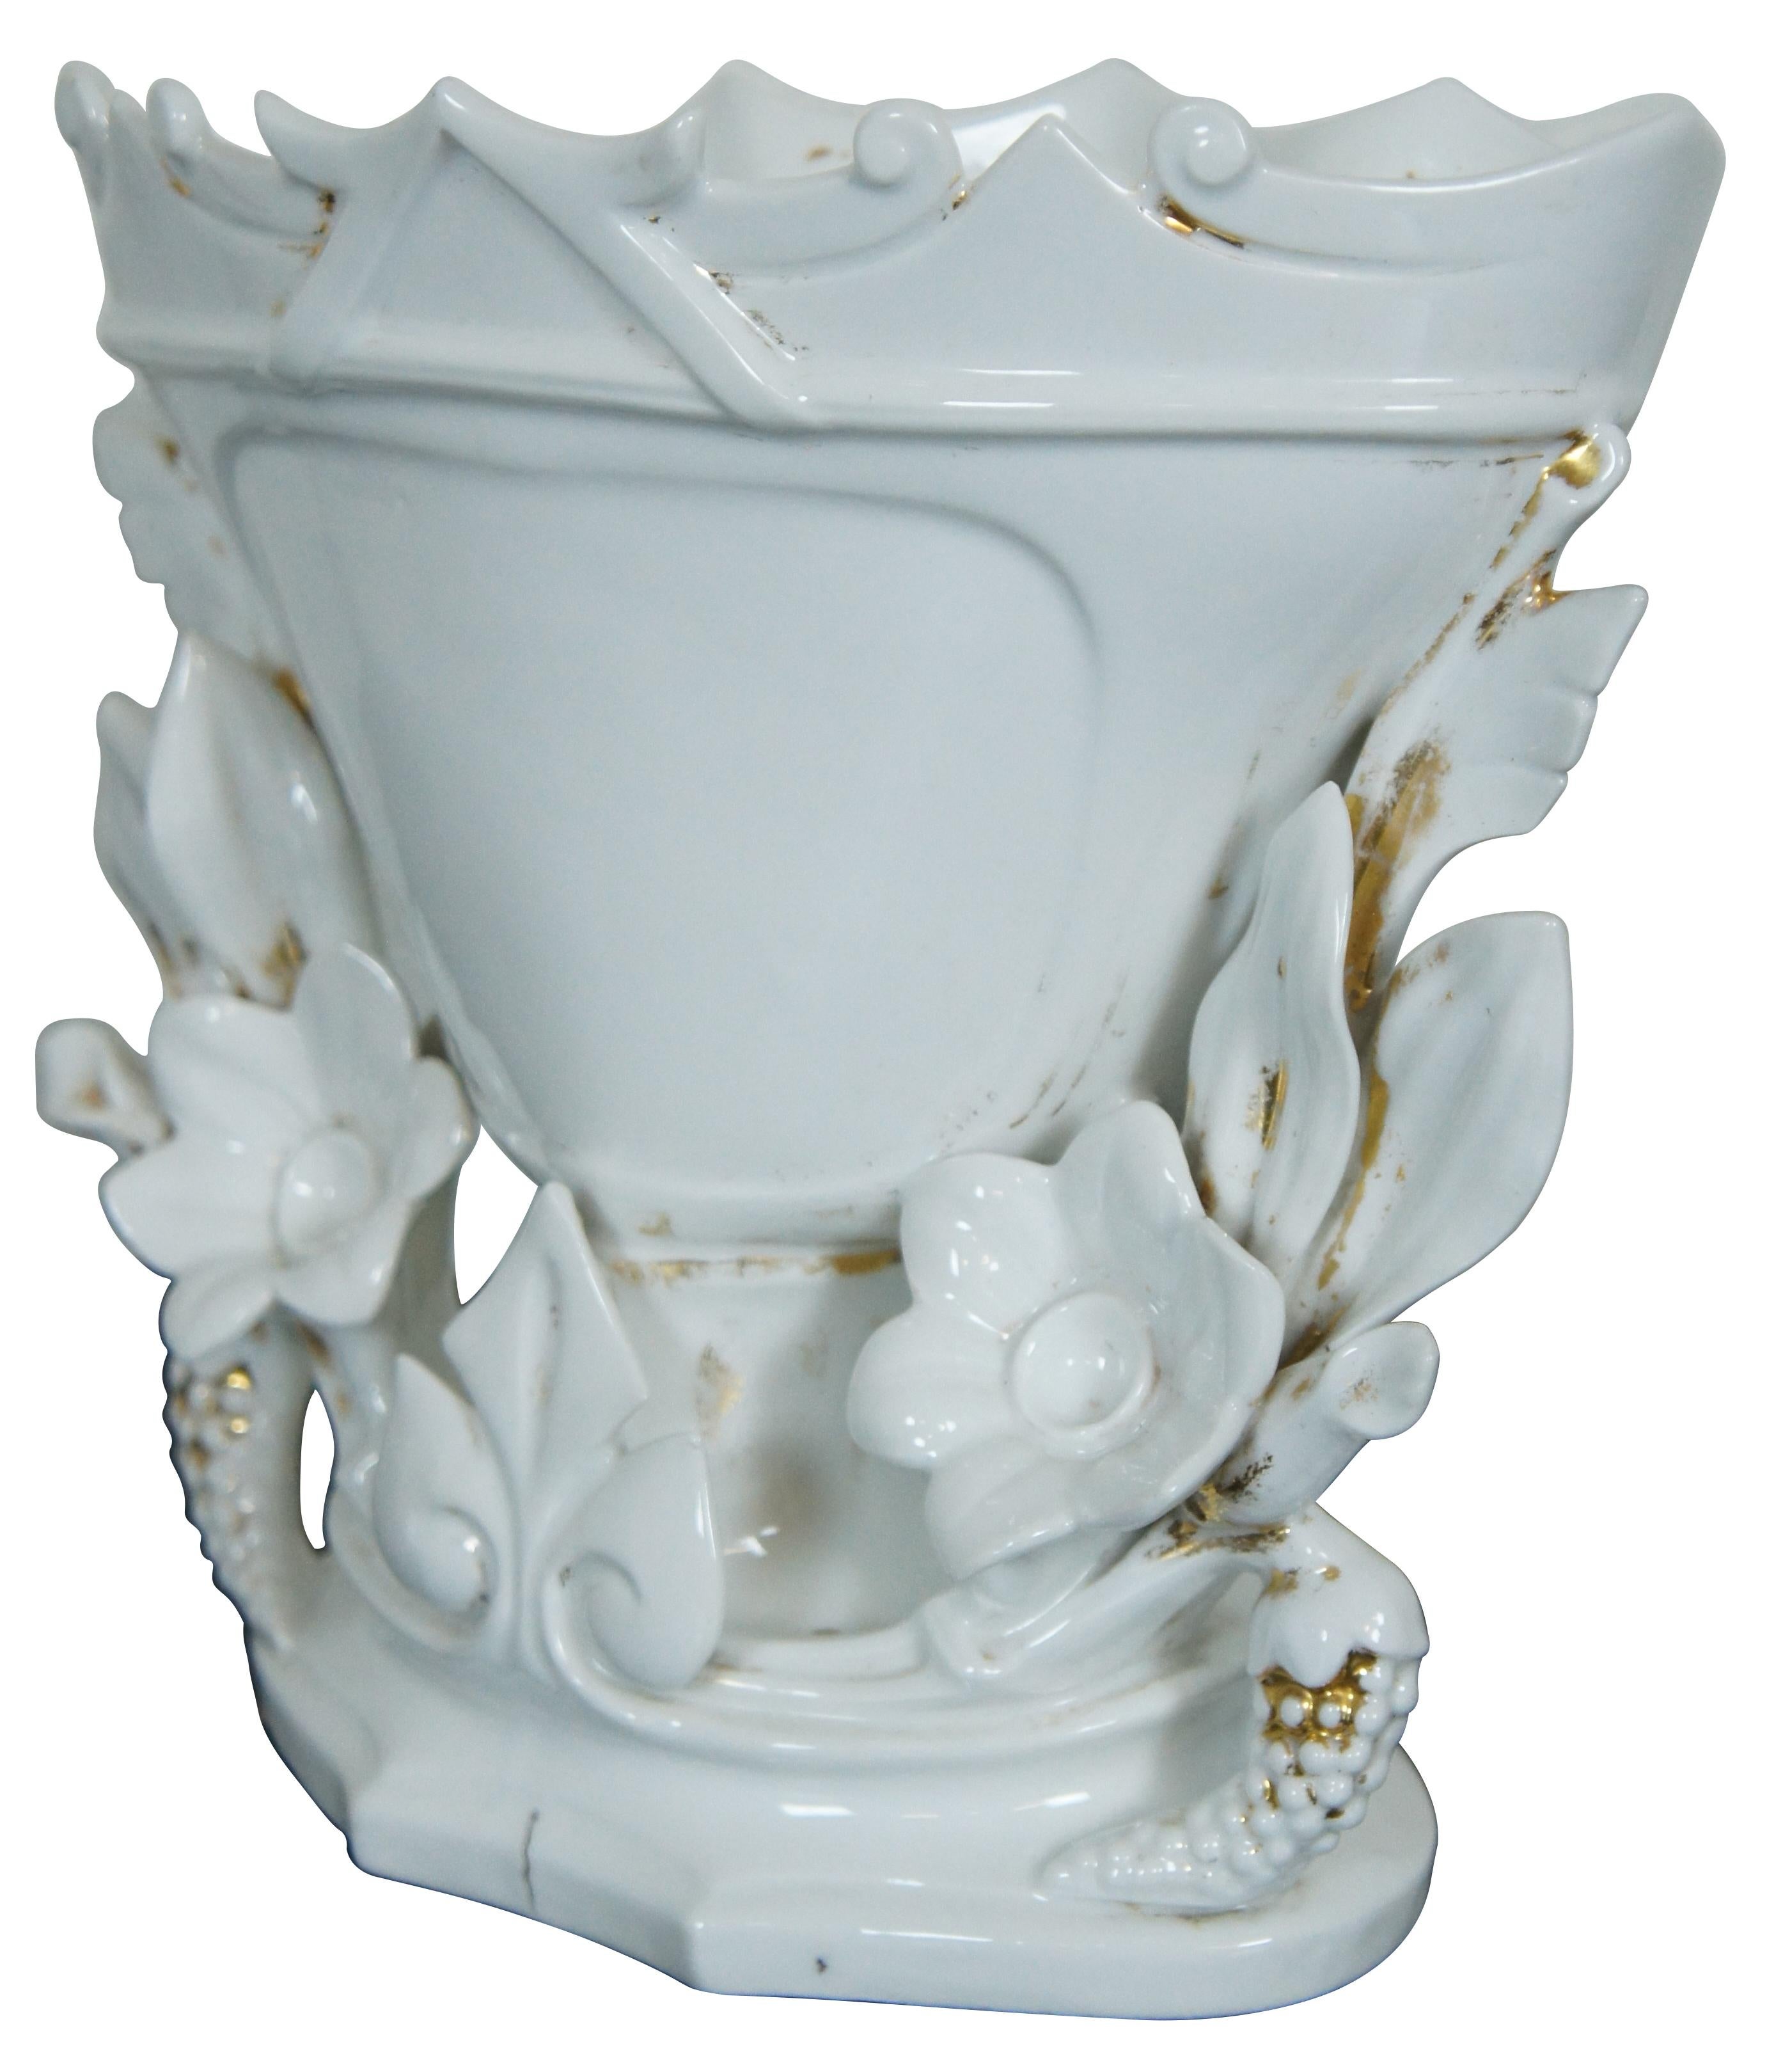 Vase de centre de table ancien en porcelaine blanche du Vieux Paris avec une forme de vie en forme de gobelet ou de trophée avec des accents floraux et un bord festonné.